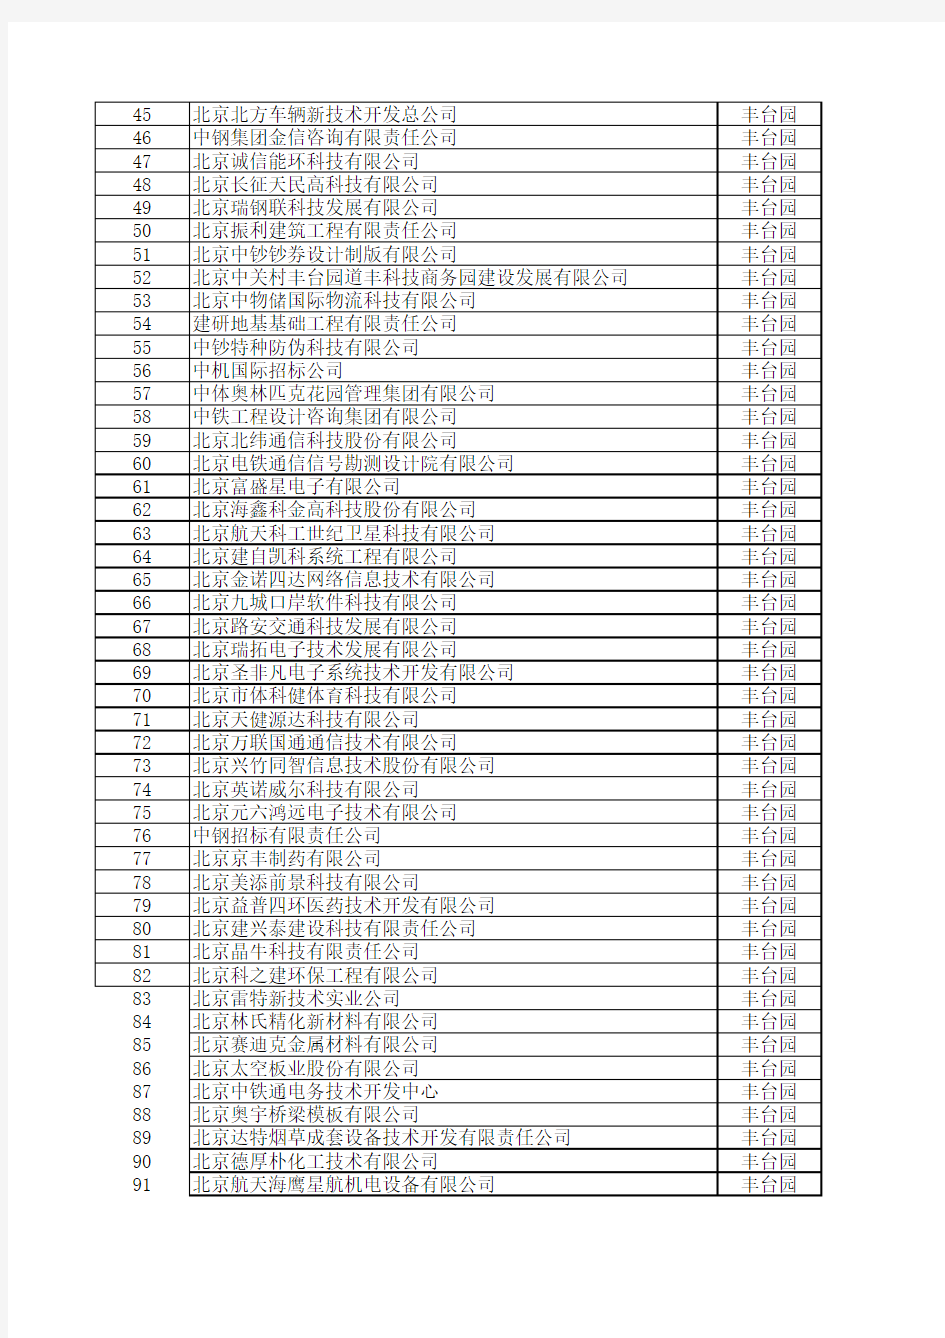 2008年度丰台科技园瞪羚企业名单